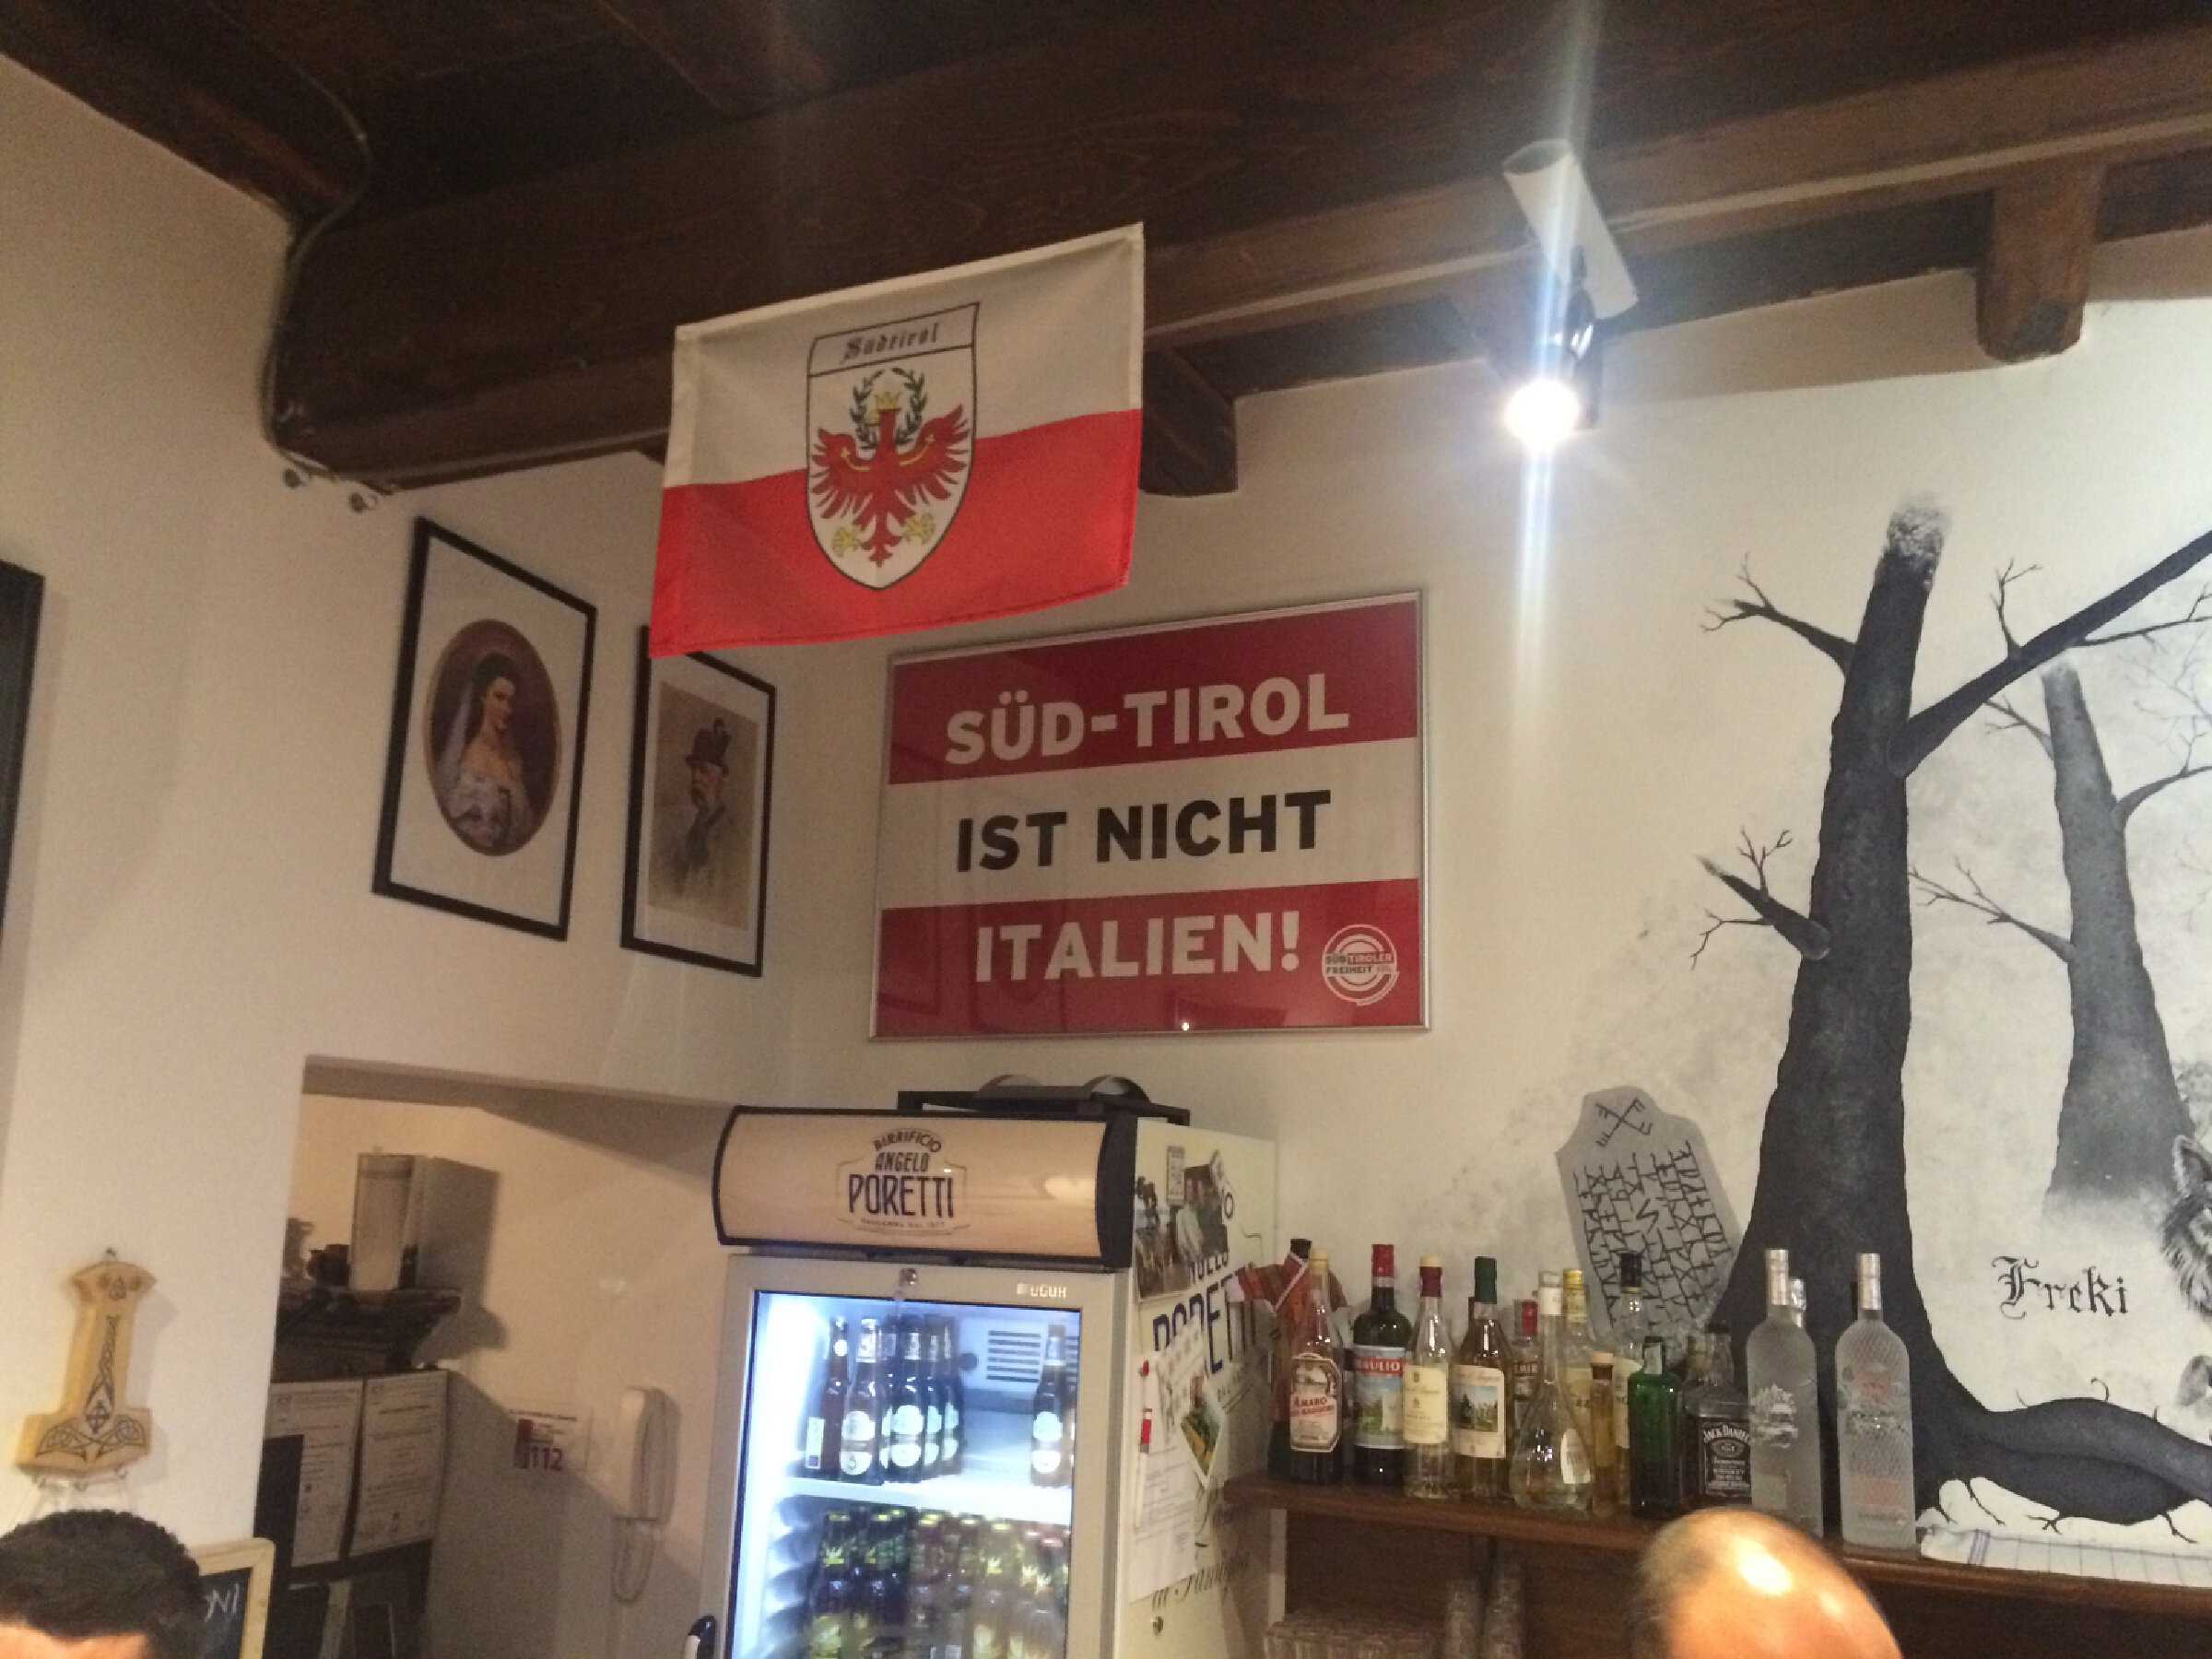 Süd-Tirol ist nicht Italien!